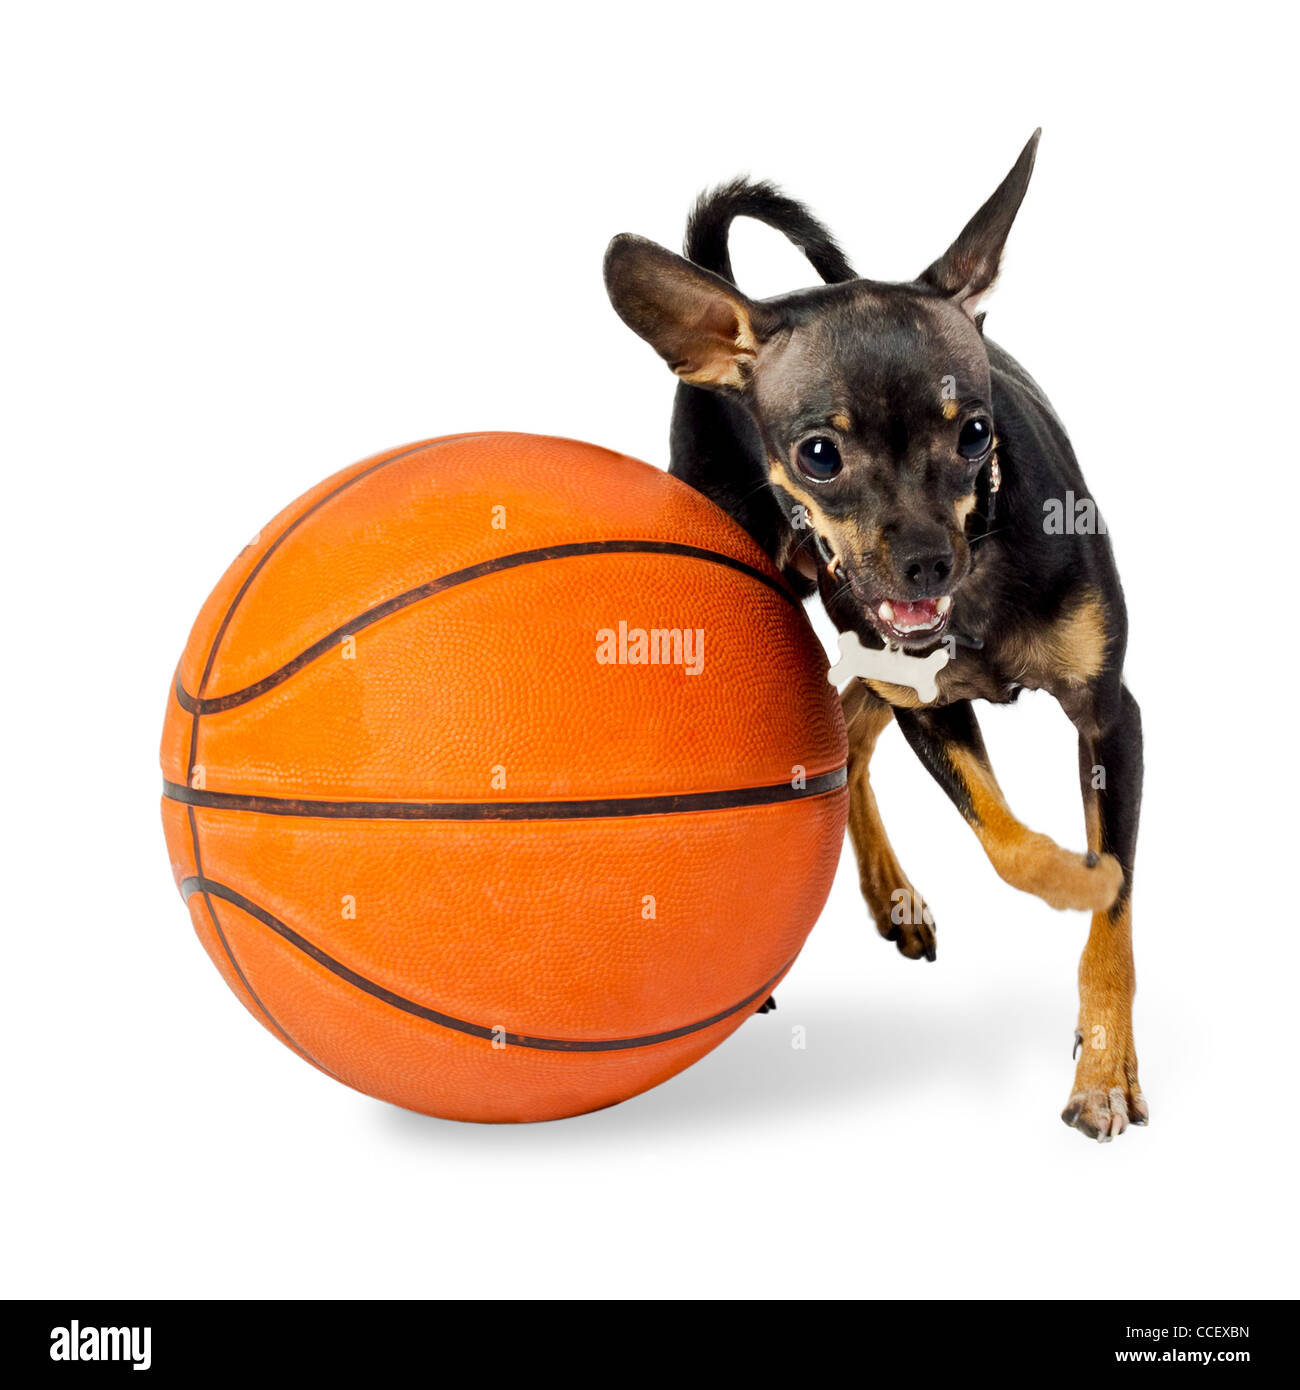 Chien jouant à la balle - Jouet chien terrier, 18 mois, avec le basket-ball sur fond blanc Banque D'Images